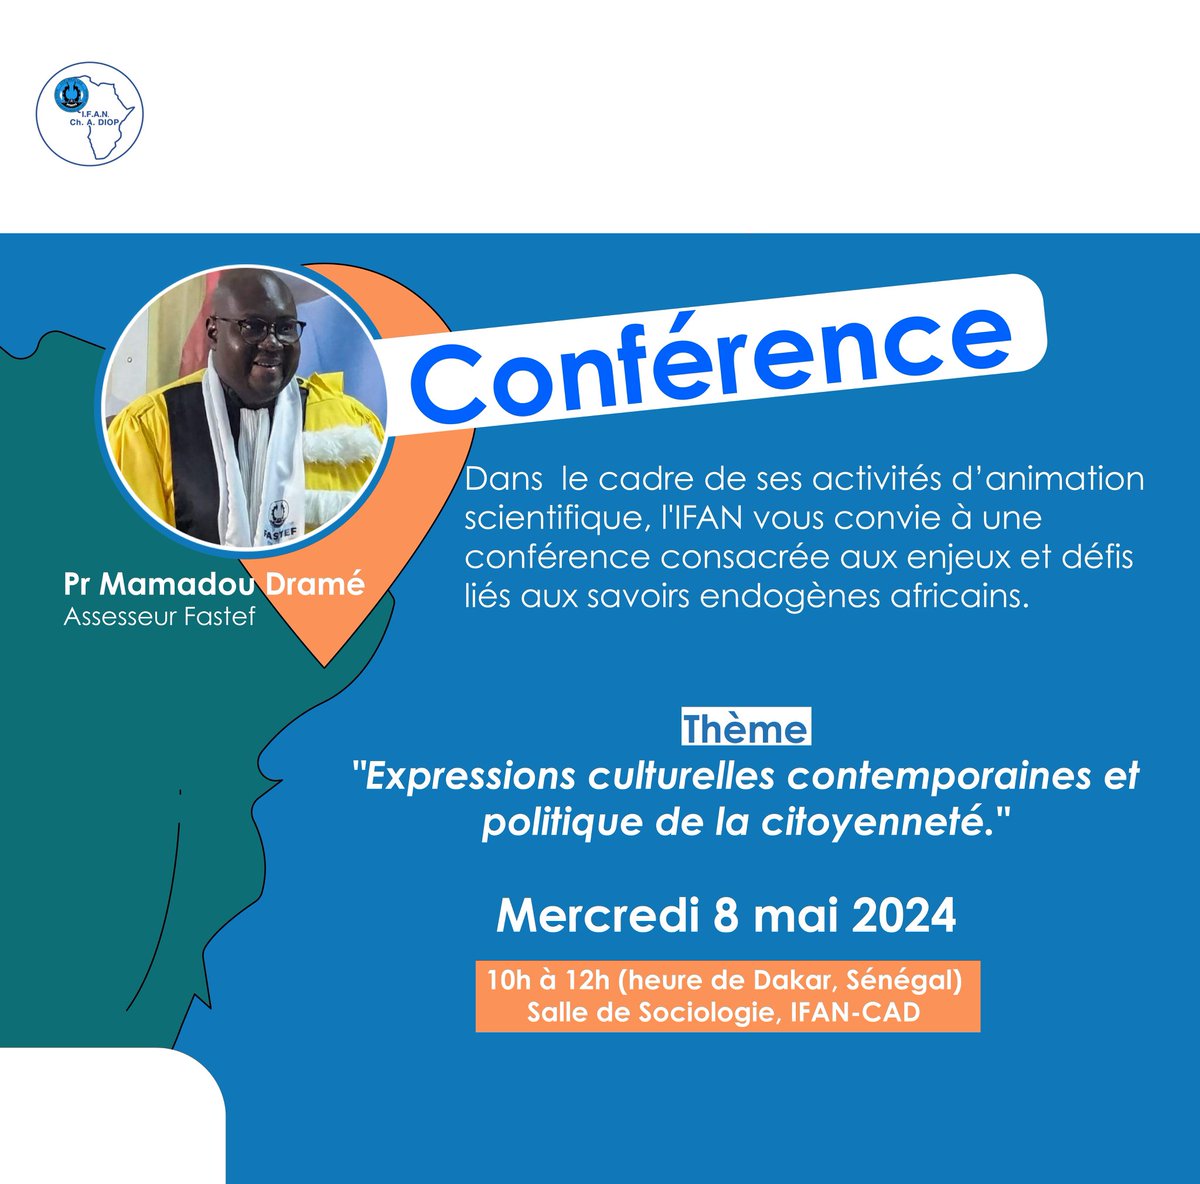 Save the date ! Ce mercredi 8 mai à la salle de sociologie de l'IFAN. @UCAD_Senegal @Oumyregina